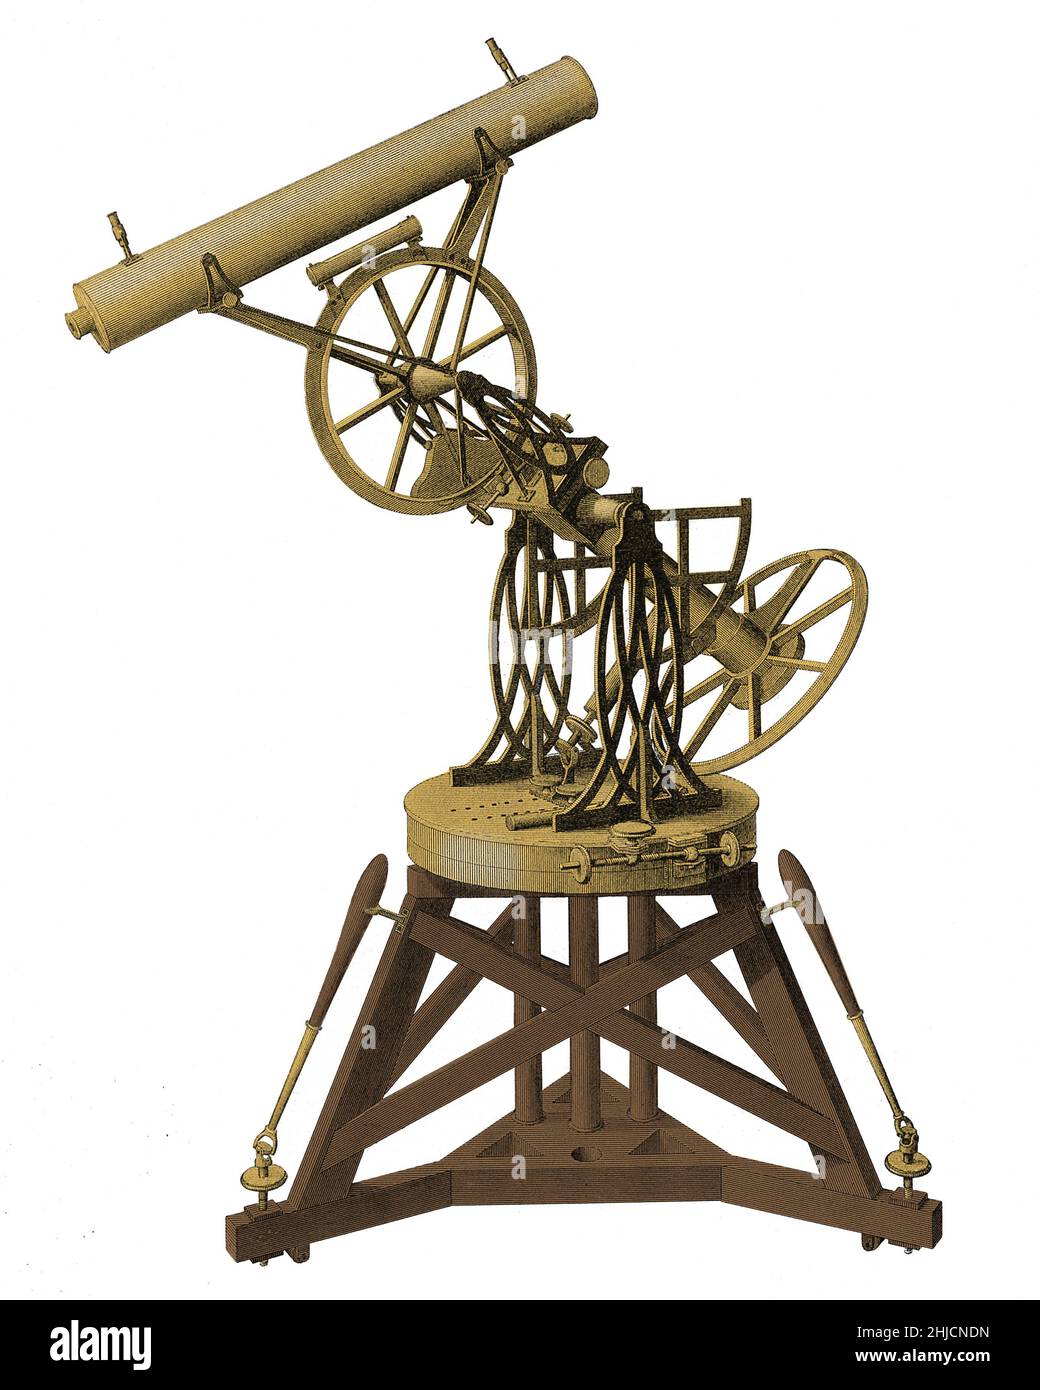 Troughton equatoriale. Questo telescopio e supporto è stato realizzato dal costruttore britannico Edward Troughton (1753-1835). Questa opera è tratta da 'un'introduzione all'Astronomia pratica', pubblicata da William Pearson in diversi volumi tra il 1824 e il 1829. Foto Stock